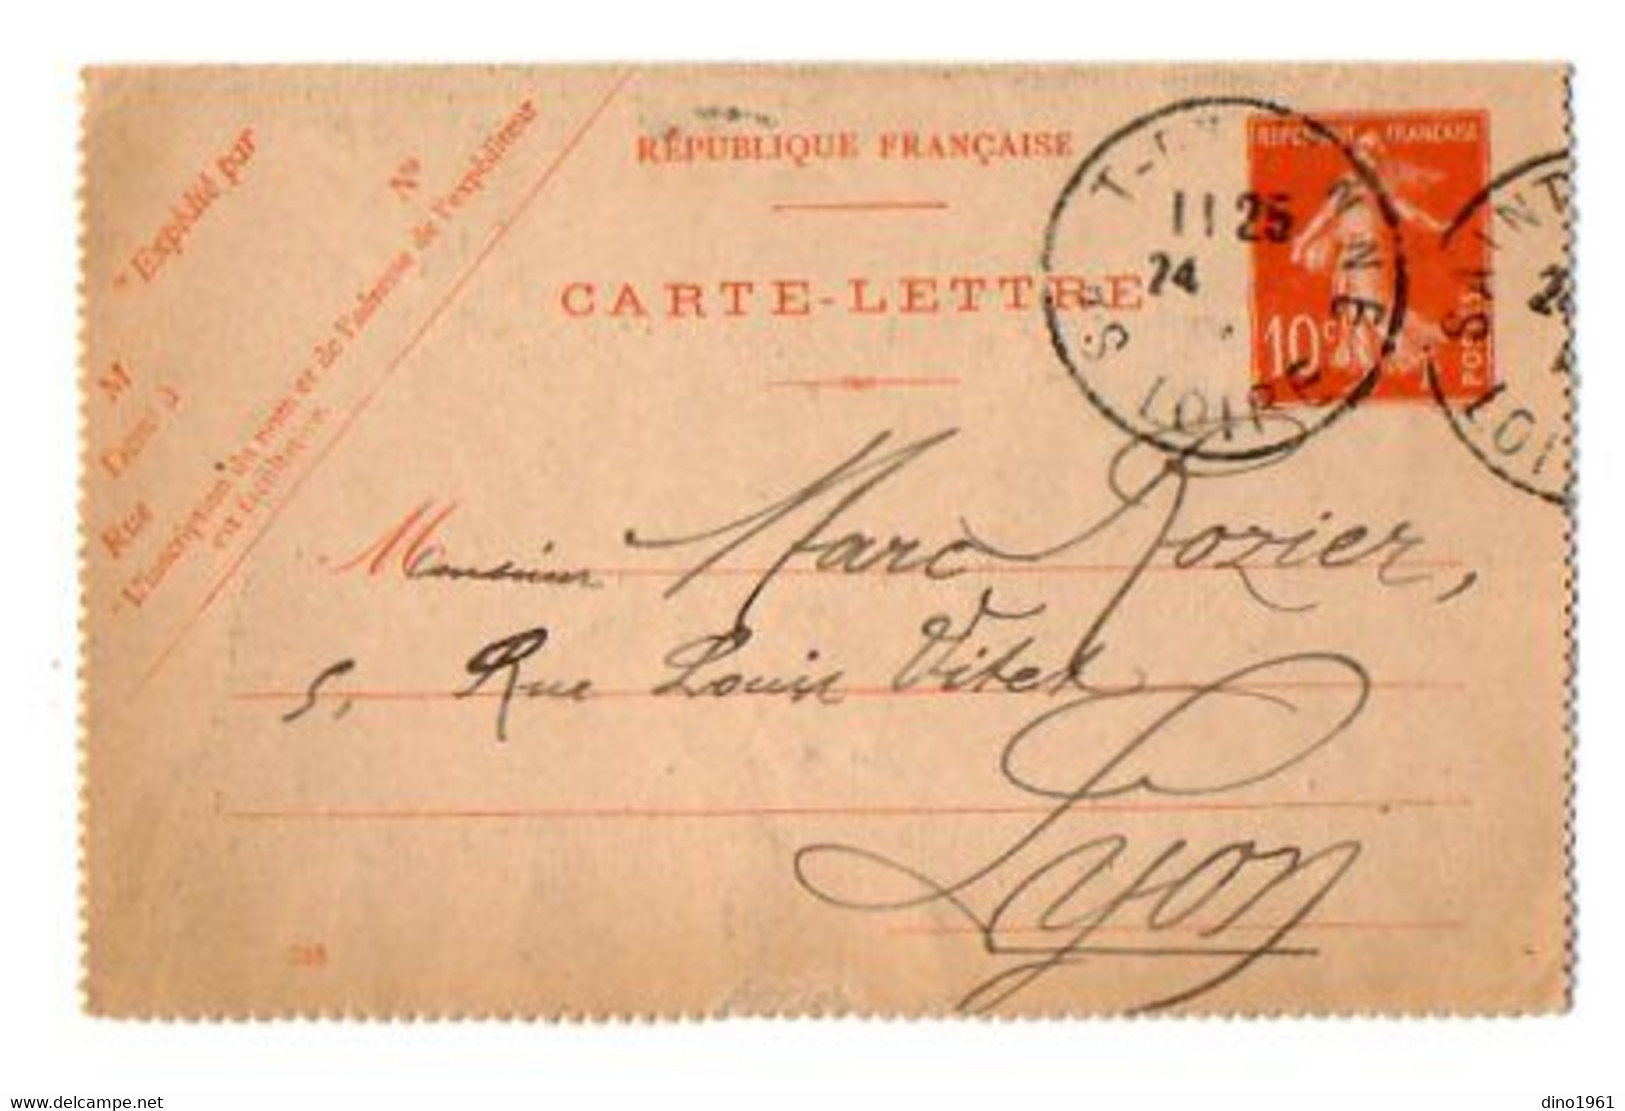 TB 3940 - 1914 - Entier Postal - Soiries Et Lainages Stéphane COMBE à SAINT - ETIENNE Pour Mr ROZIER à LYON - Cartes-lettres